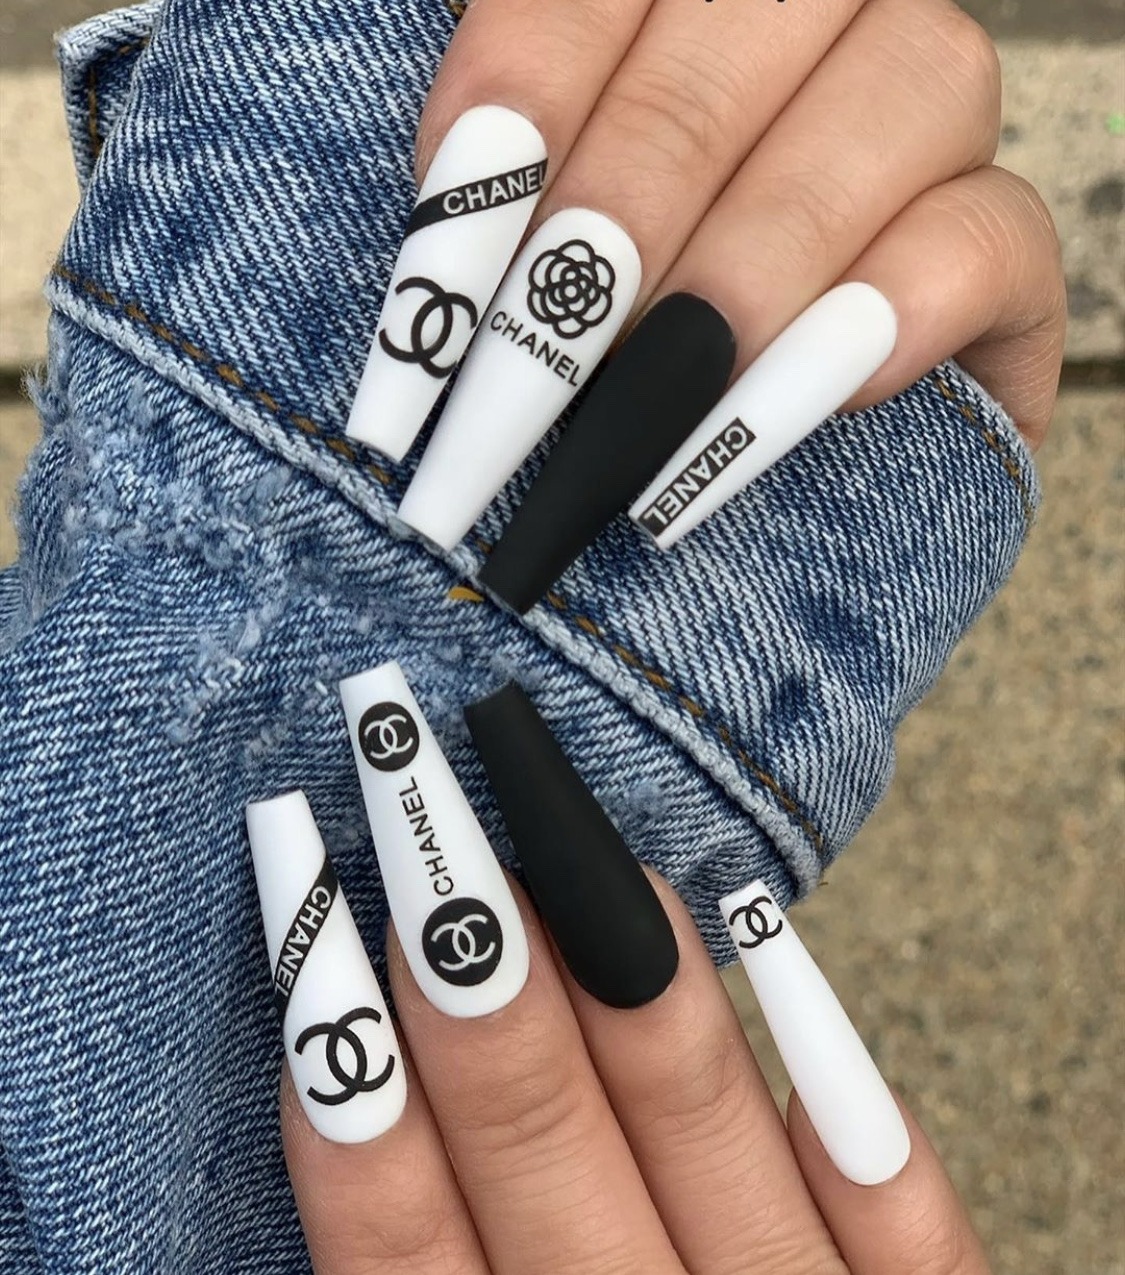 Nail Chanel thời thượng: Cùng khám phá màn thể hiện nghệ thuật móng tay đầy tinh tế và thời thượng với bộ sưu tập Nail Chanel mới nhất. Với đa dạng màu sắc và họa tiết, chắc chắn bạn sẽ tìm được điều gì đó phù hợp với phong cách của mình.